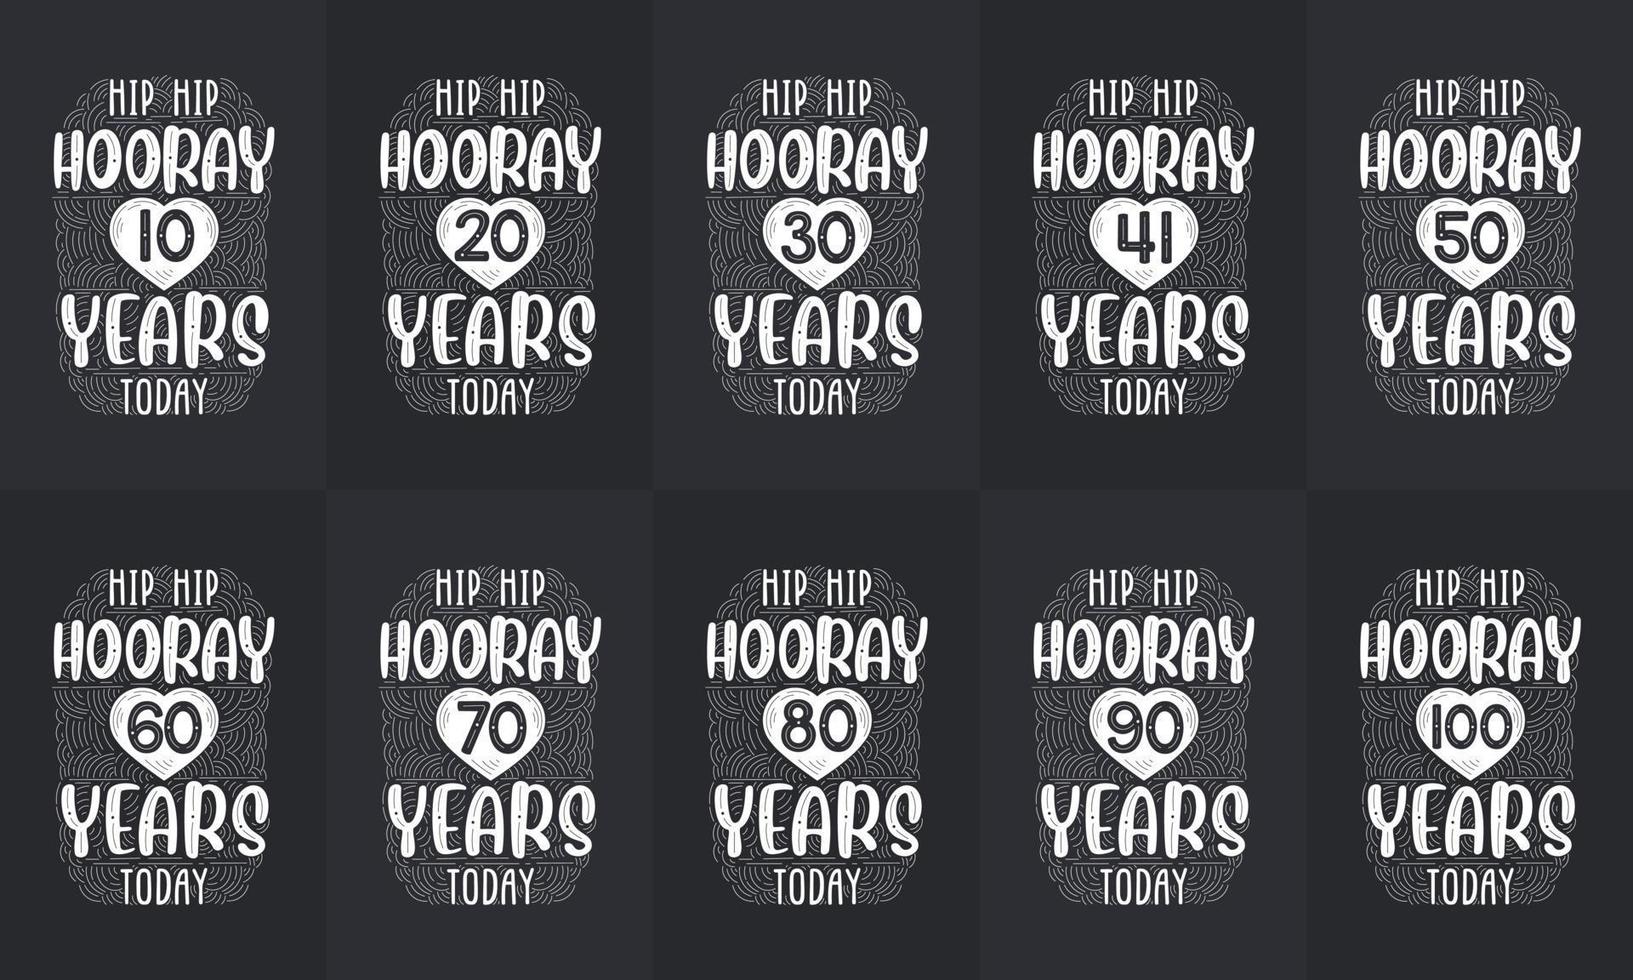 gelukkige verjaardag ontwerpset. beste verjaardag typografie offerte ontwerpbundel. hiep hiep hoera 10, 18, 20, 30, 40, 50, 60, 70, 80, 90, 100 jaar vandaag vector